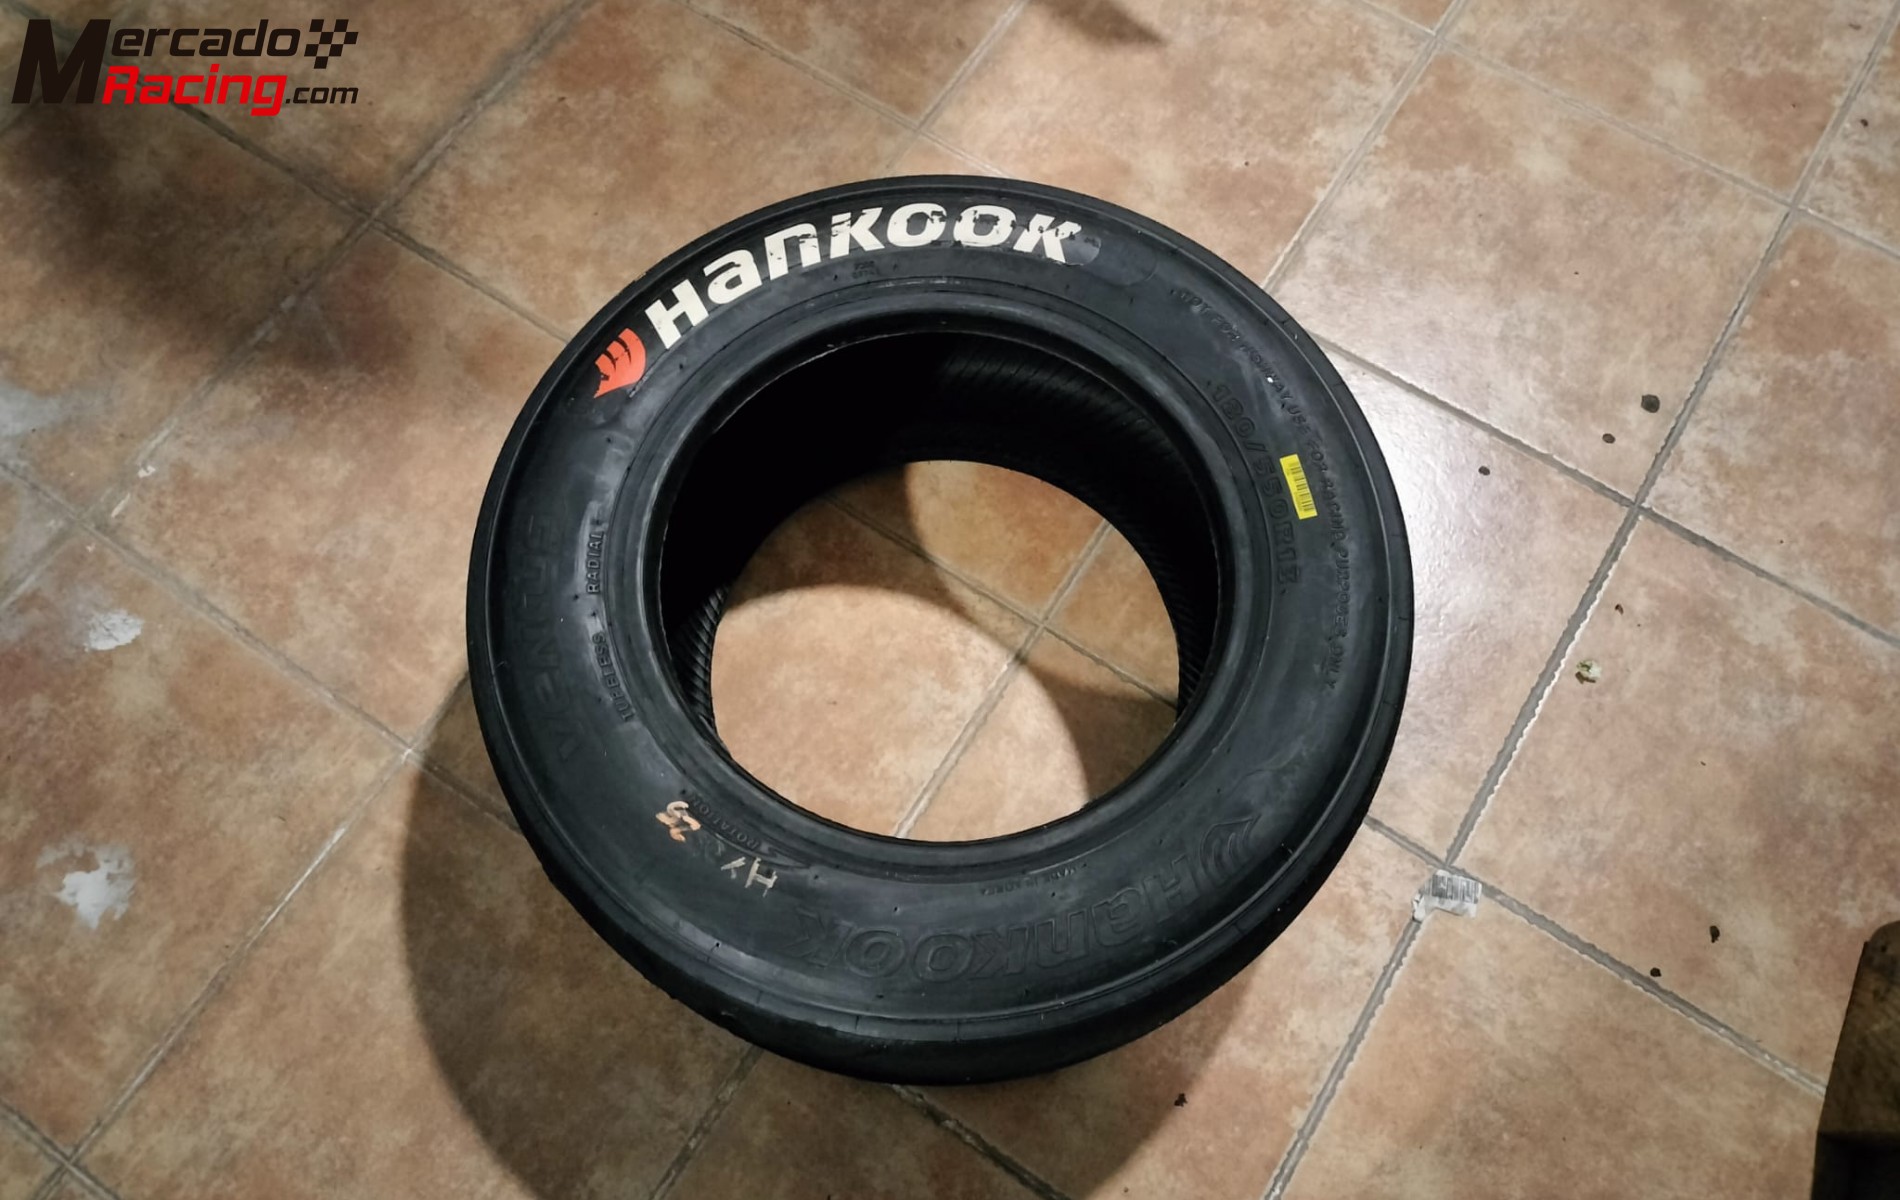 Neumáticos hankook c92 180/55 r13 al 70% de vida aproximada